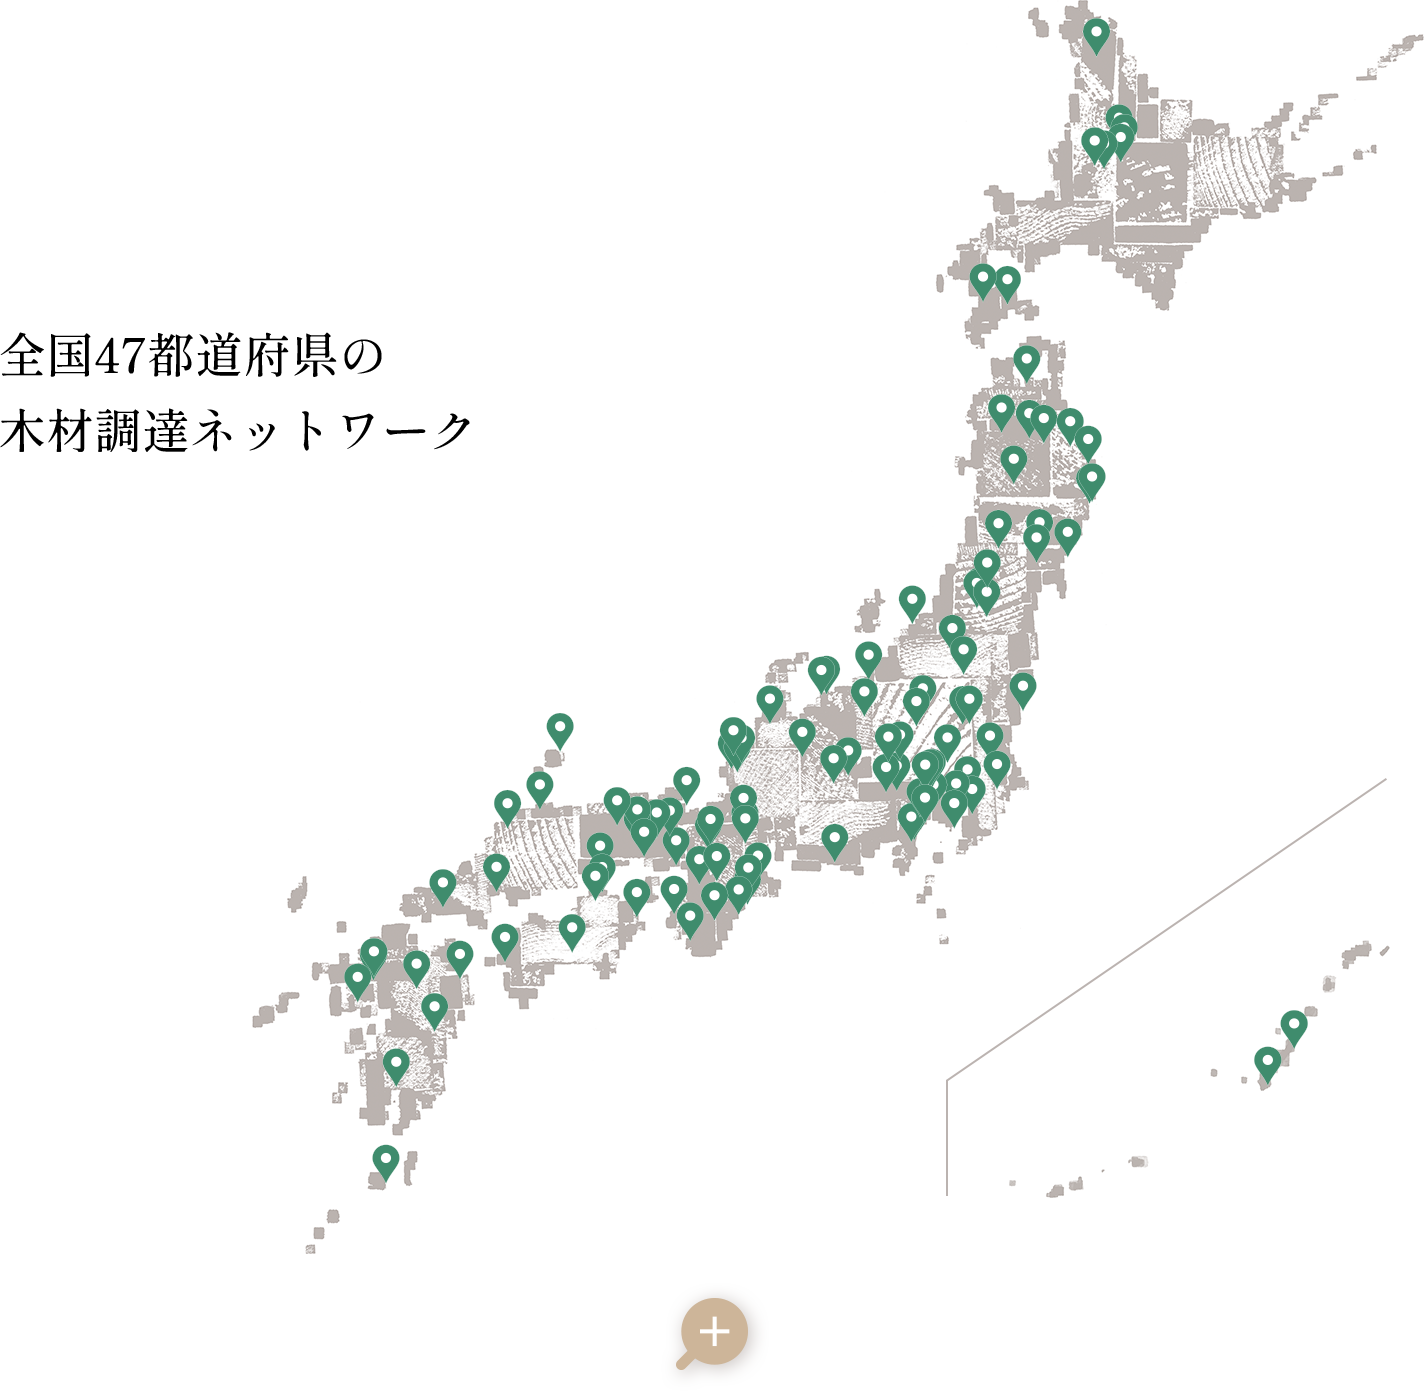 全国47都道府県の 木材調達ネットワーク